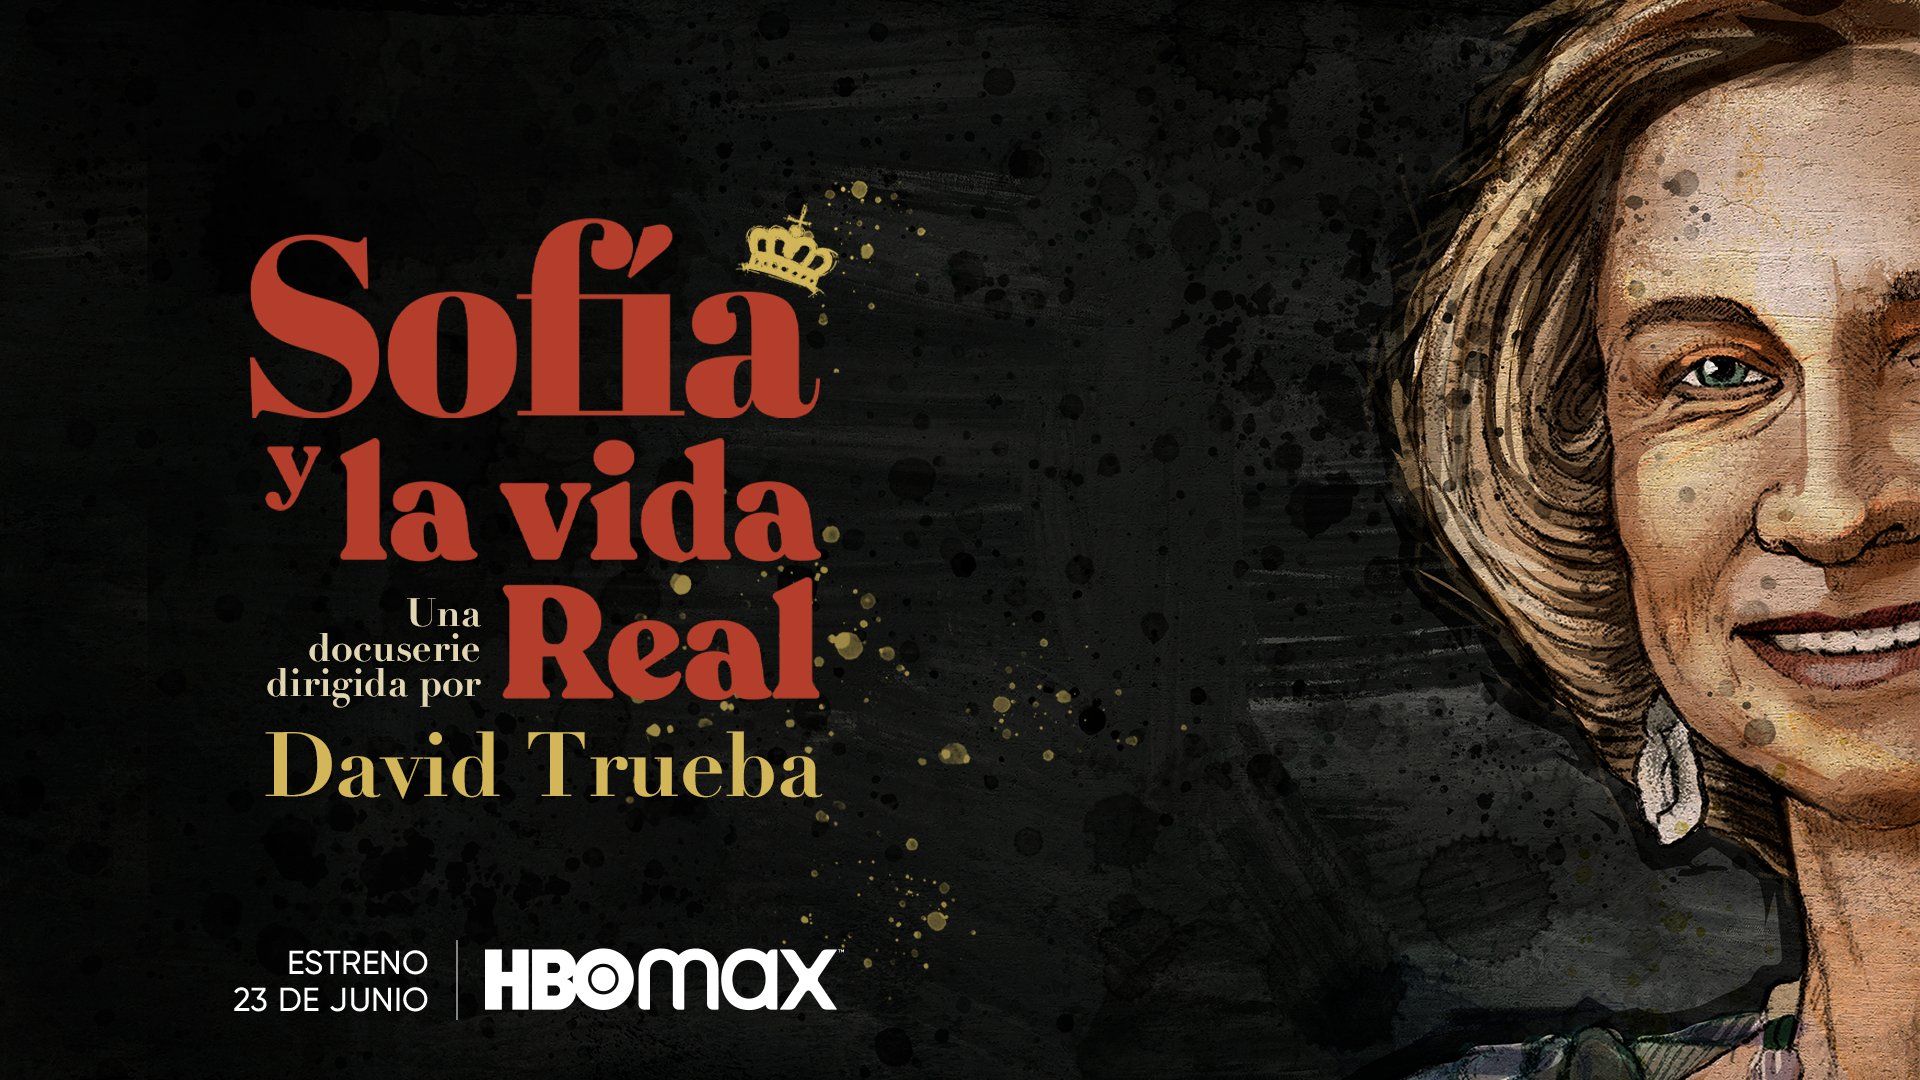 'Sofía y la vida real', la serie documental sobre la Reina Sofía dirigida por David Trueba